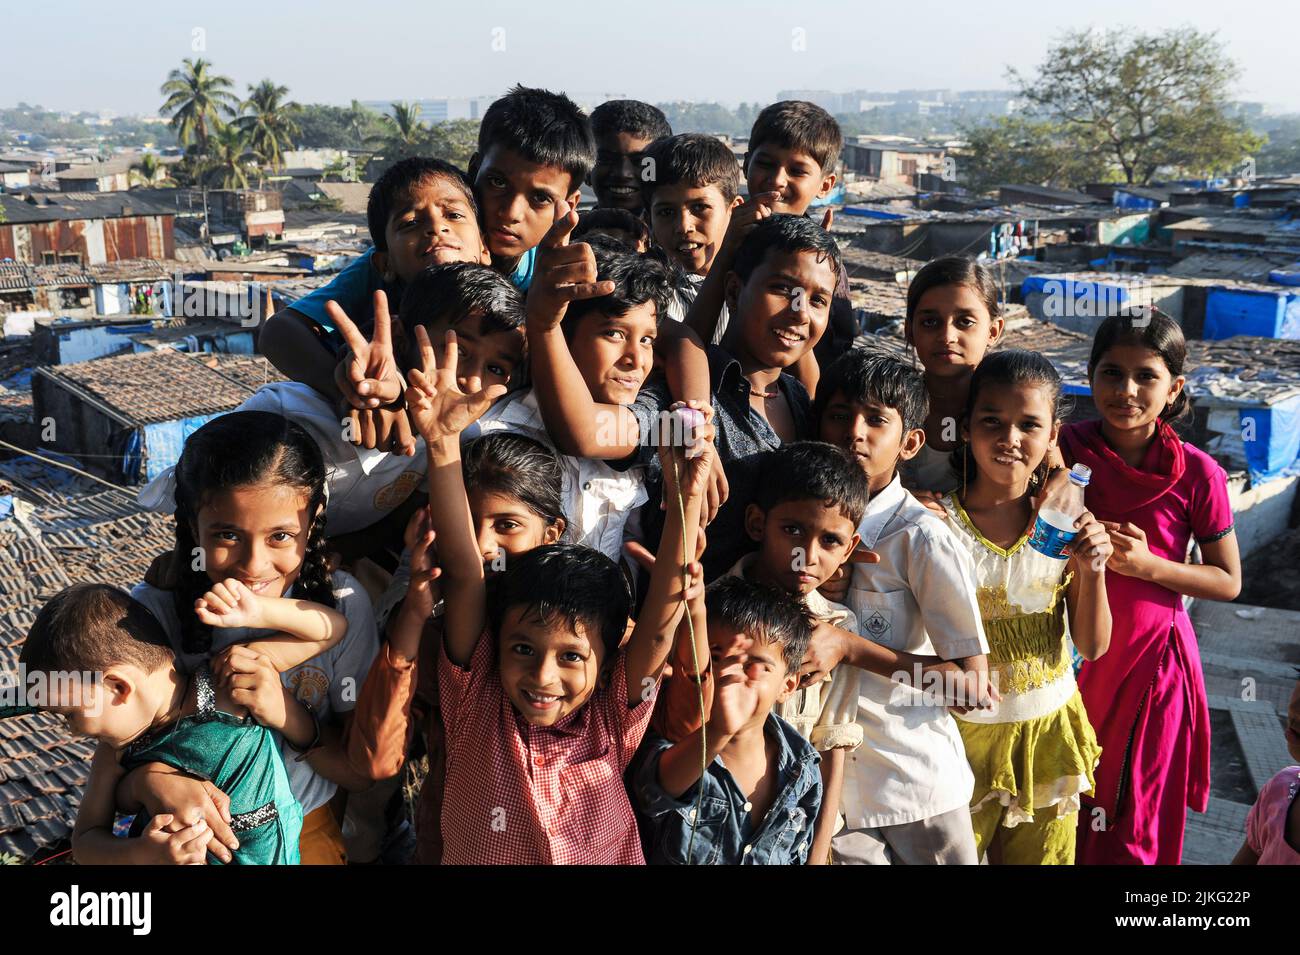 10.12.2011, Inde, , Mumbai - enfants dans une bidonville de Shivaji Nagar près de l'aéroport international Chhatrapati Shivaji Maharaj. 0SL111210D006CAROEX.JP Banque D'Images